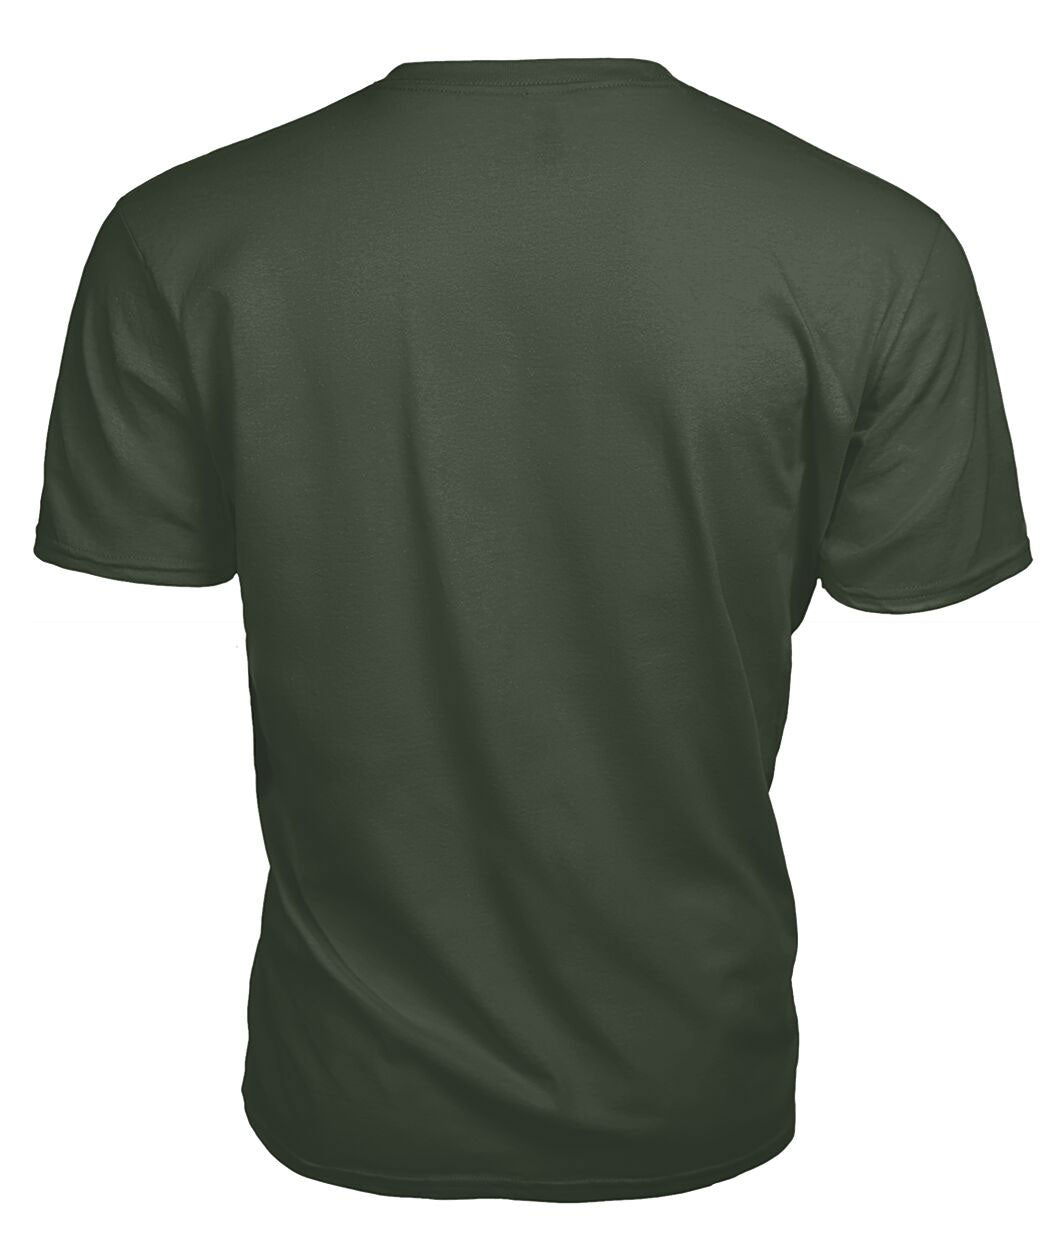 Mitchell Tartan Crest 2D T-shirt - Blood Runs Through My Veins Style